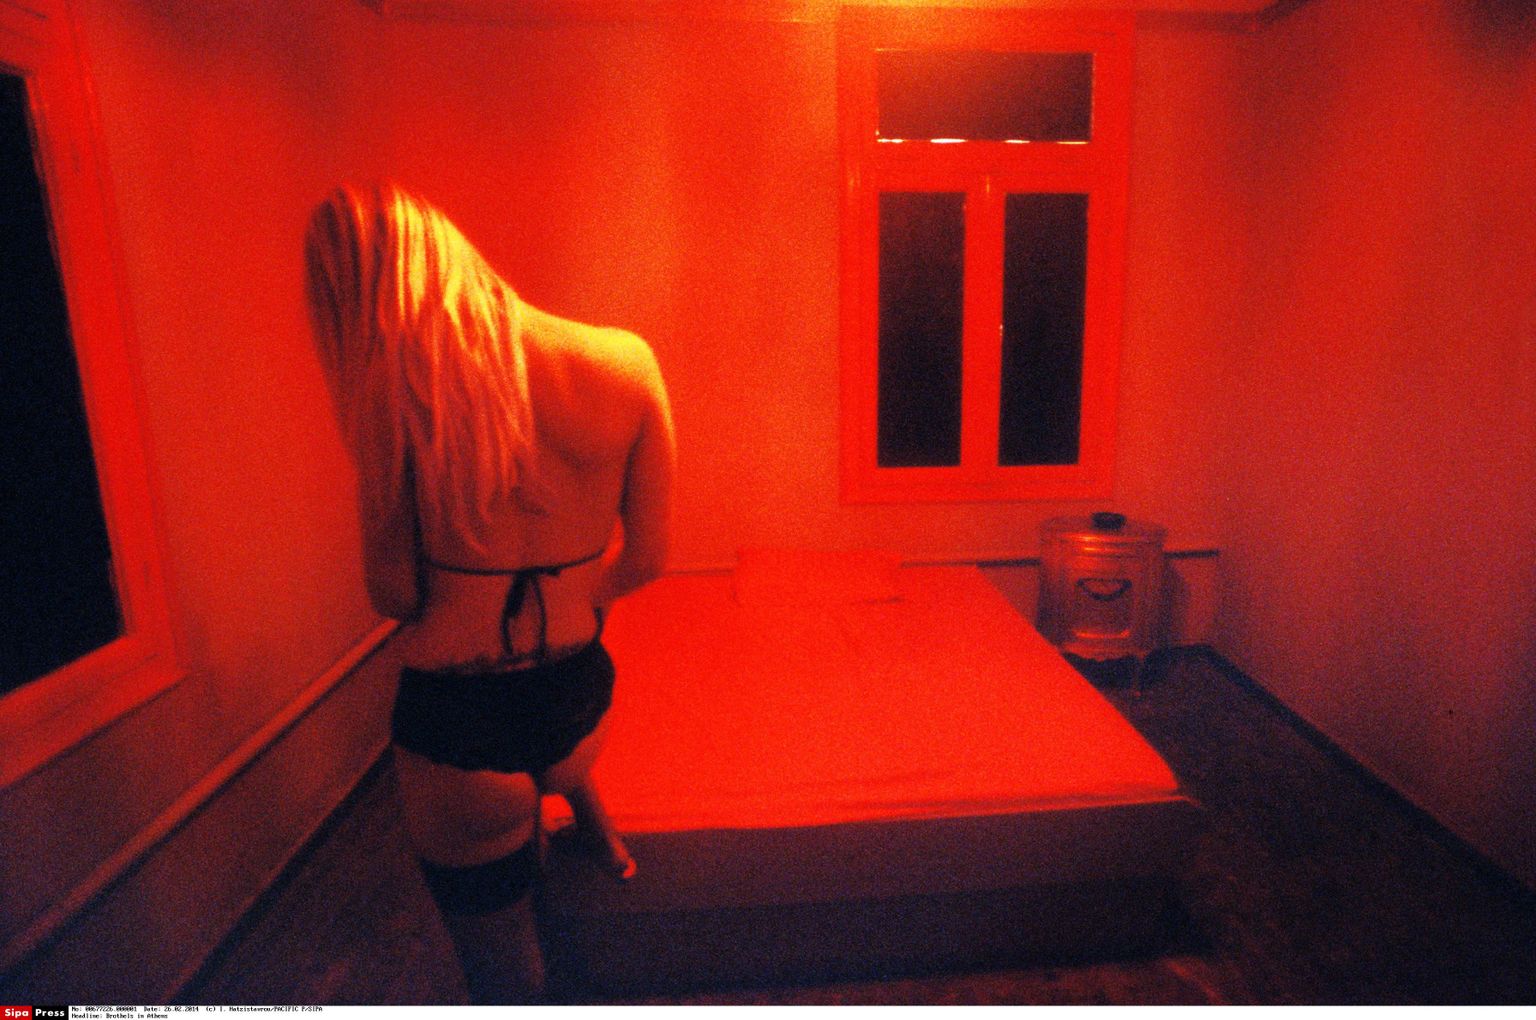 Prostitutsiooni kaasatud naine üüritoas. Foto on illustratiivne.